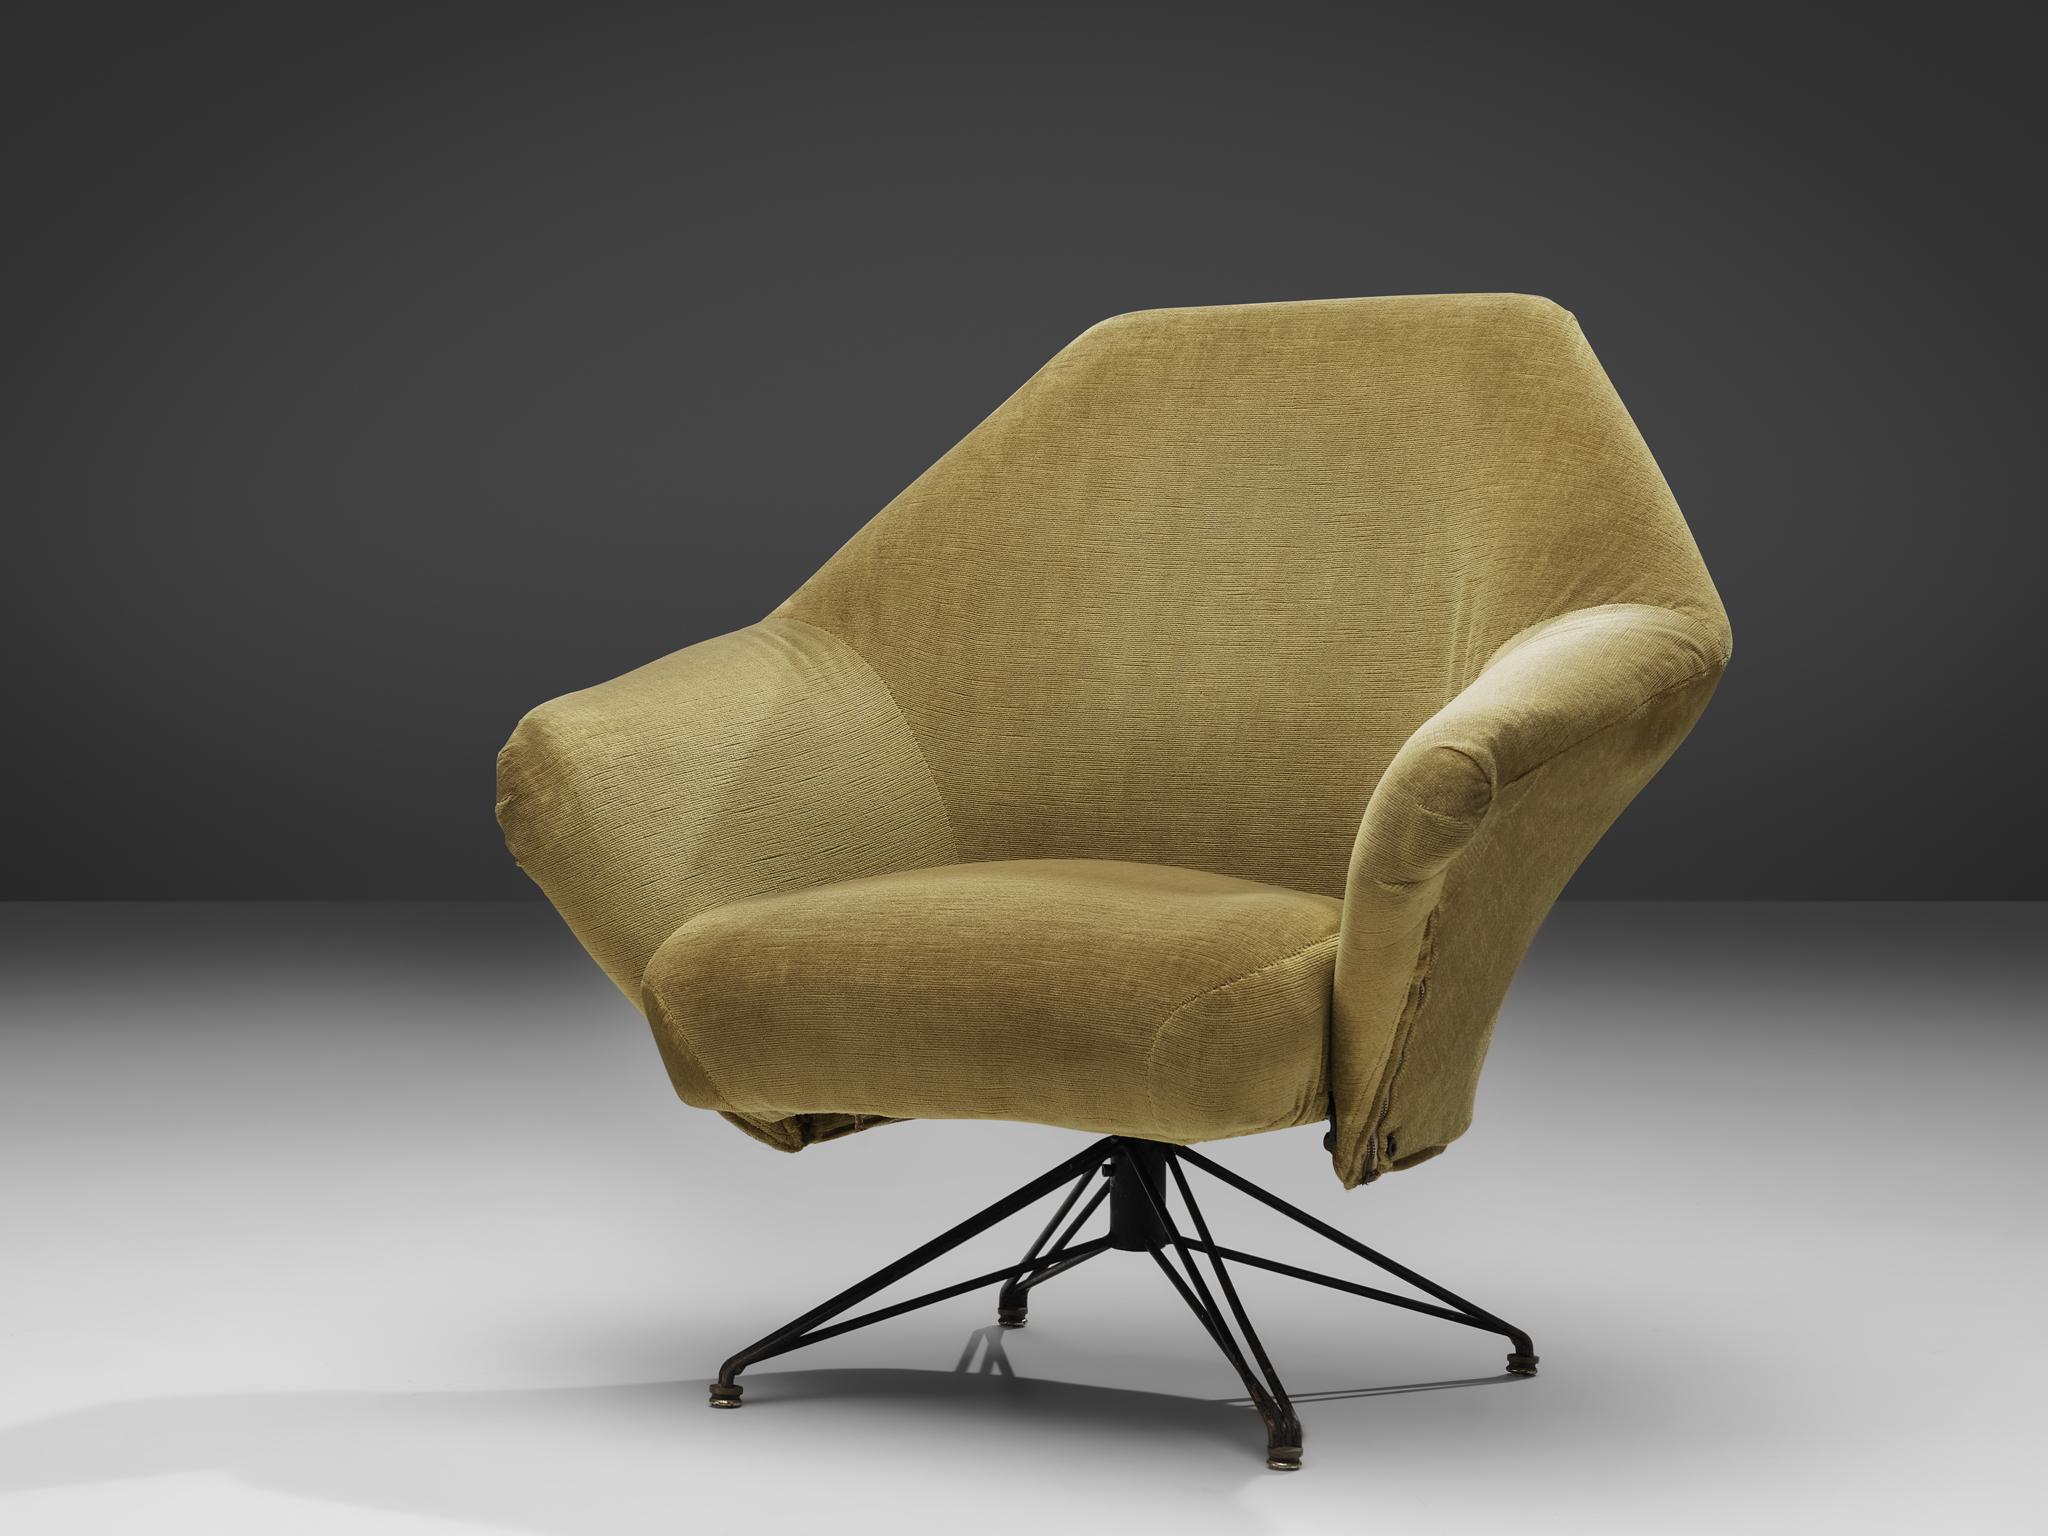 Osvaldo Borsani for Tecno, armchair model P32, velvet, metal, brass, Italy, 1956

Osvaldo Borsani designed the 